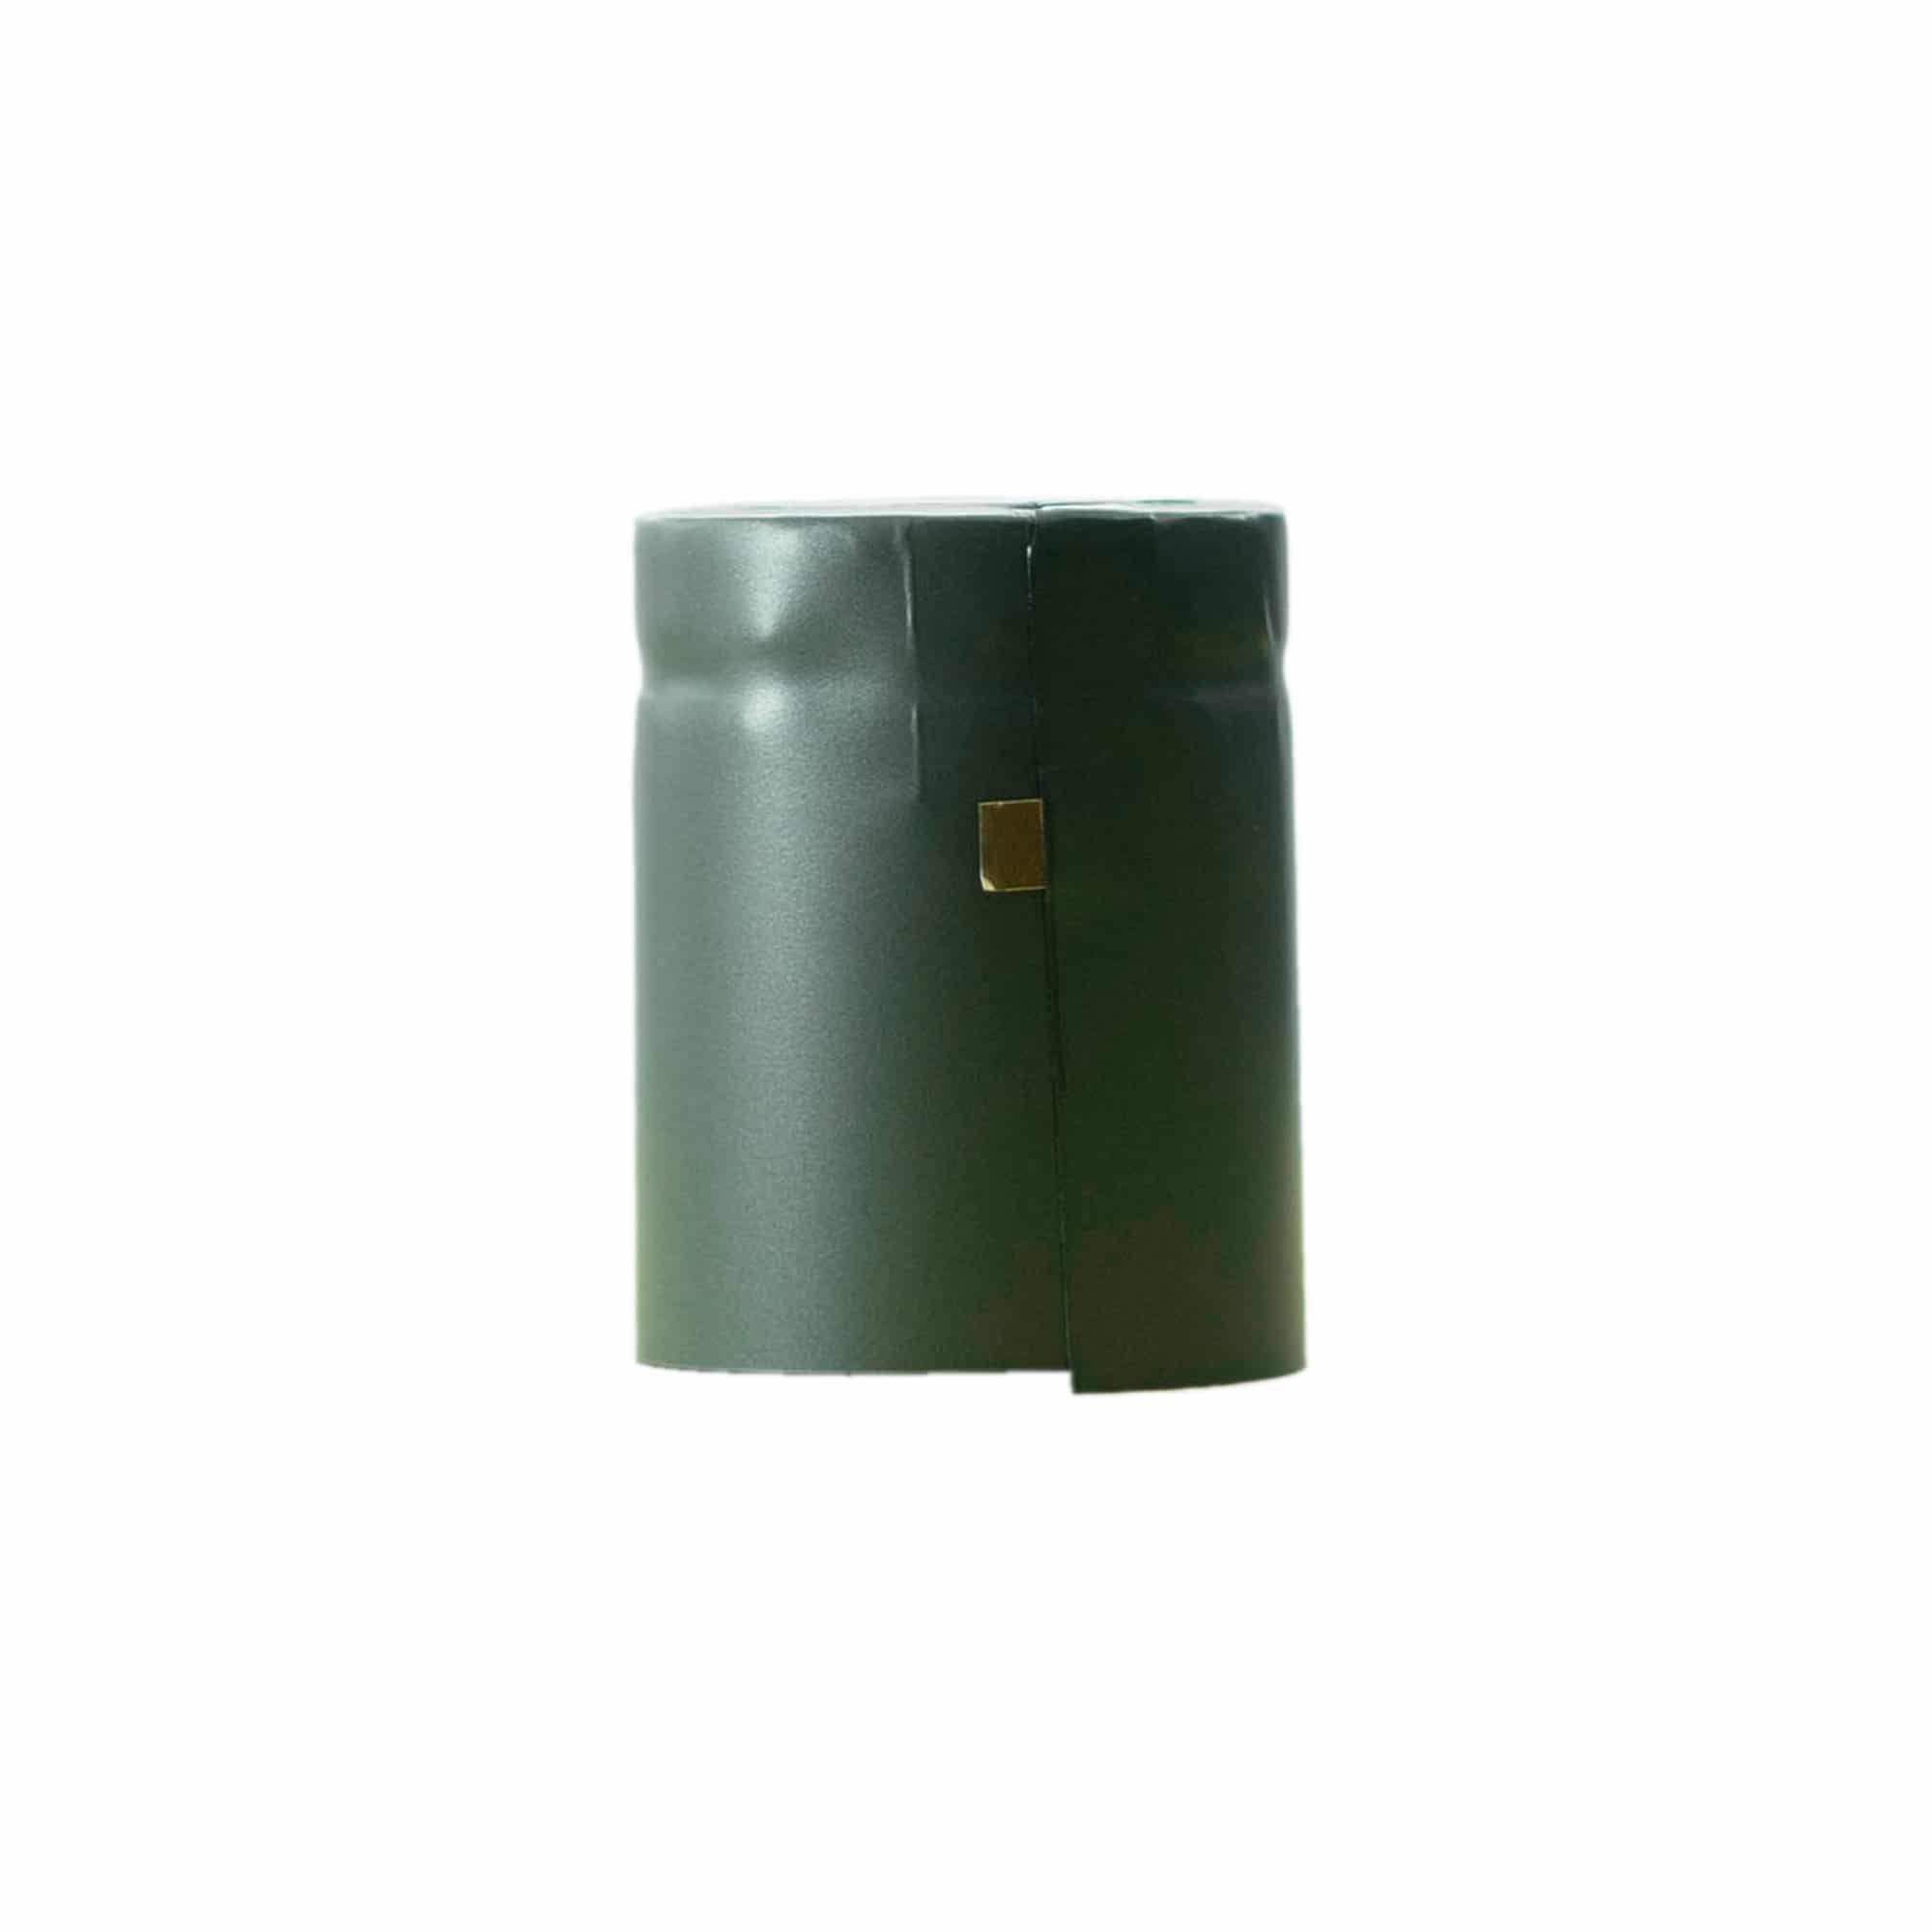 Heat shrink capsule 32x41, PVC plastic, anthracite